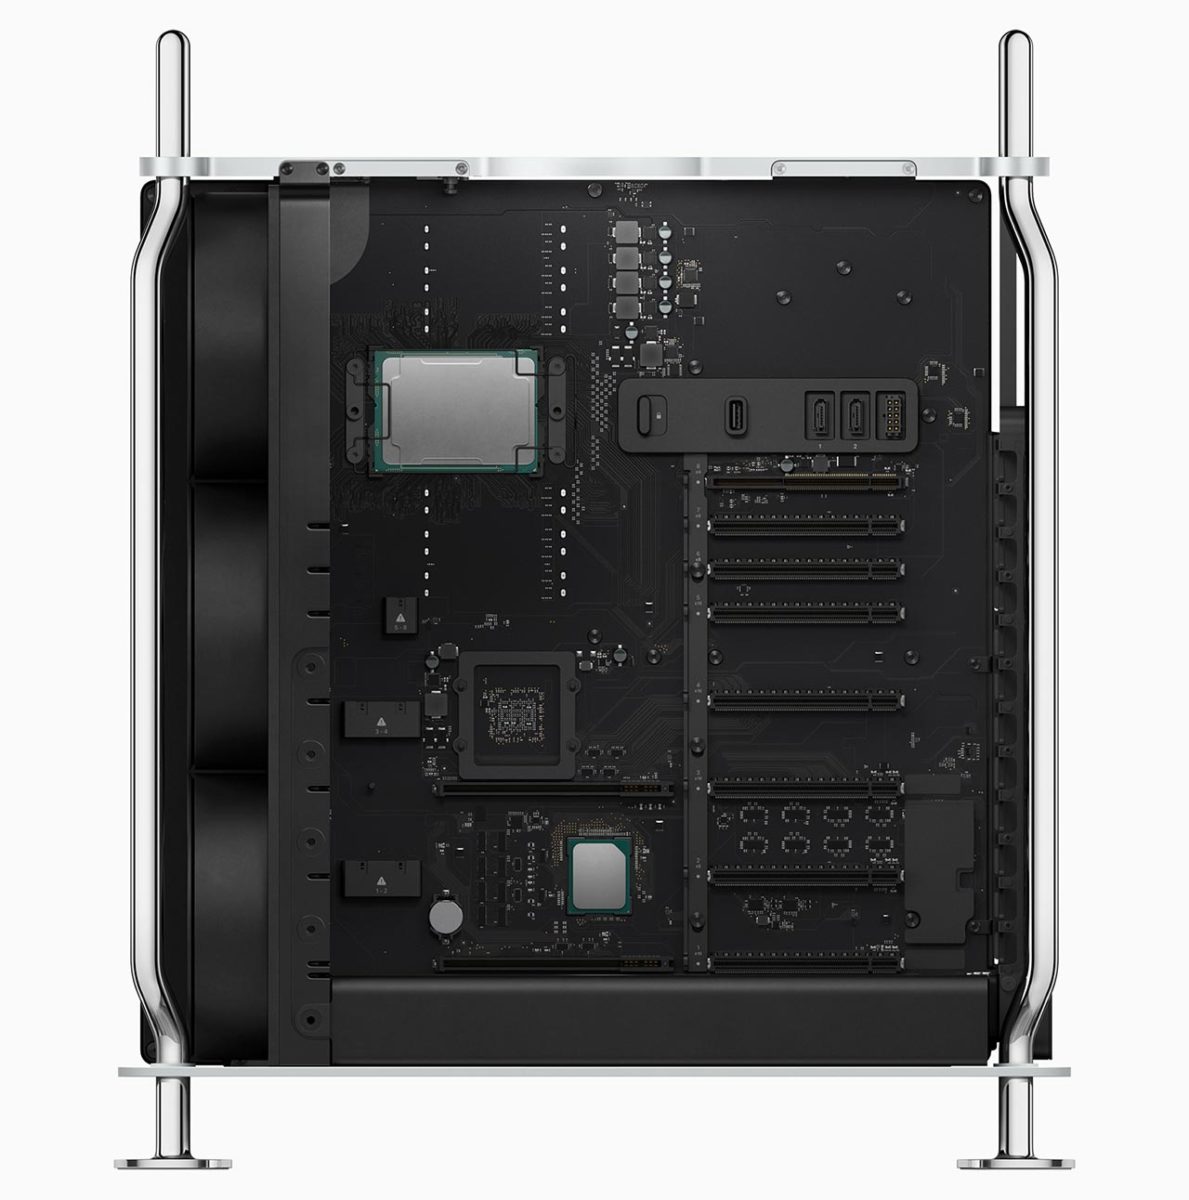 Mac Pro incorpora procesadores Xeon de hasta 28 núcleos, y ofrece un rendimiento espectacular junto a un enorme ancho de banda